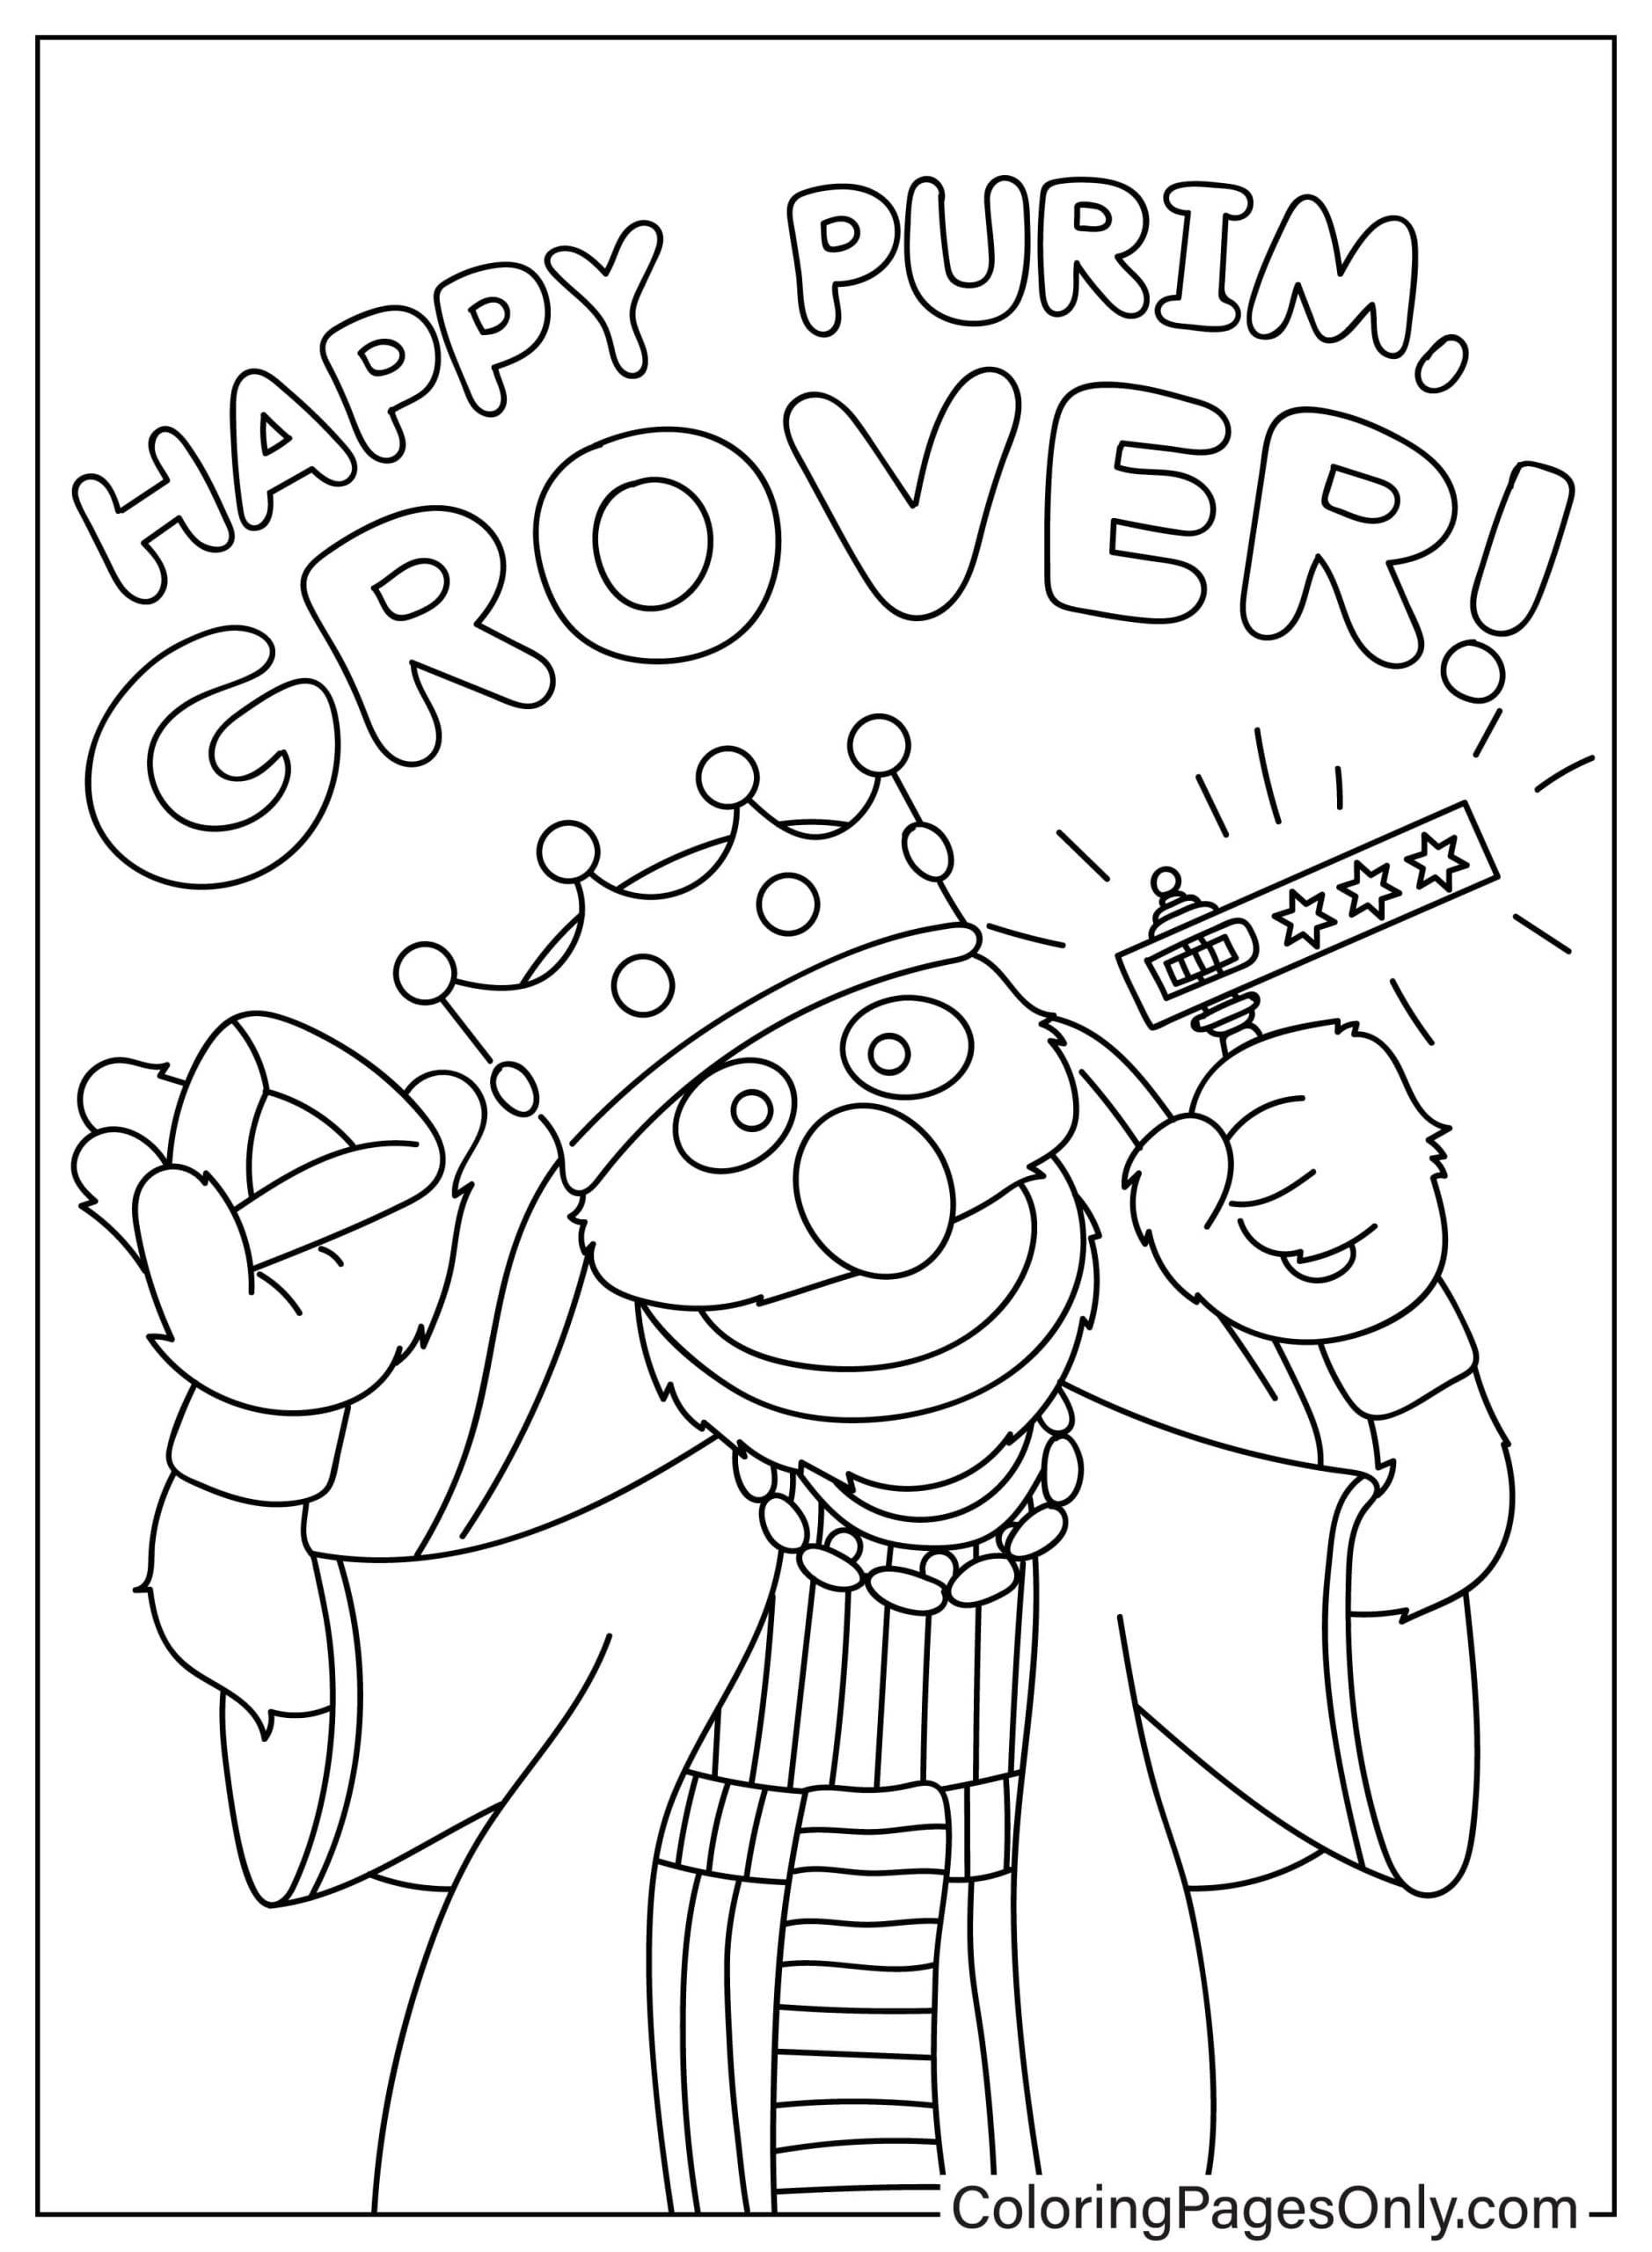 Coloriage Happy Pourim Grover de Pourim